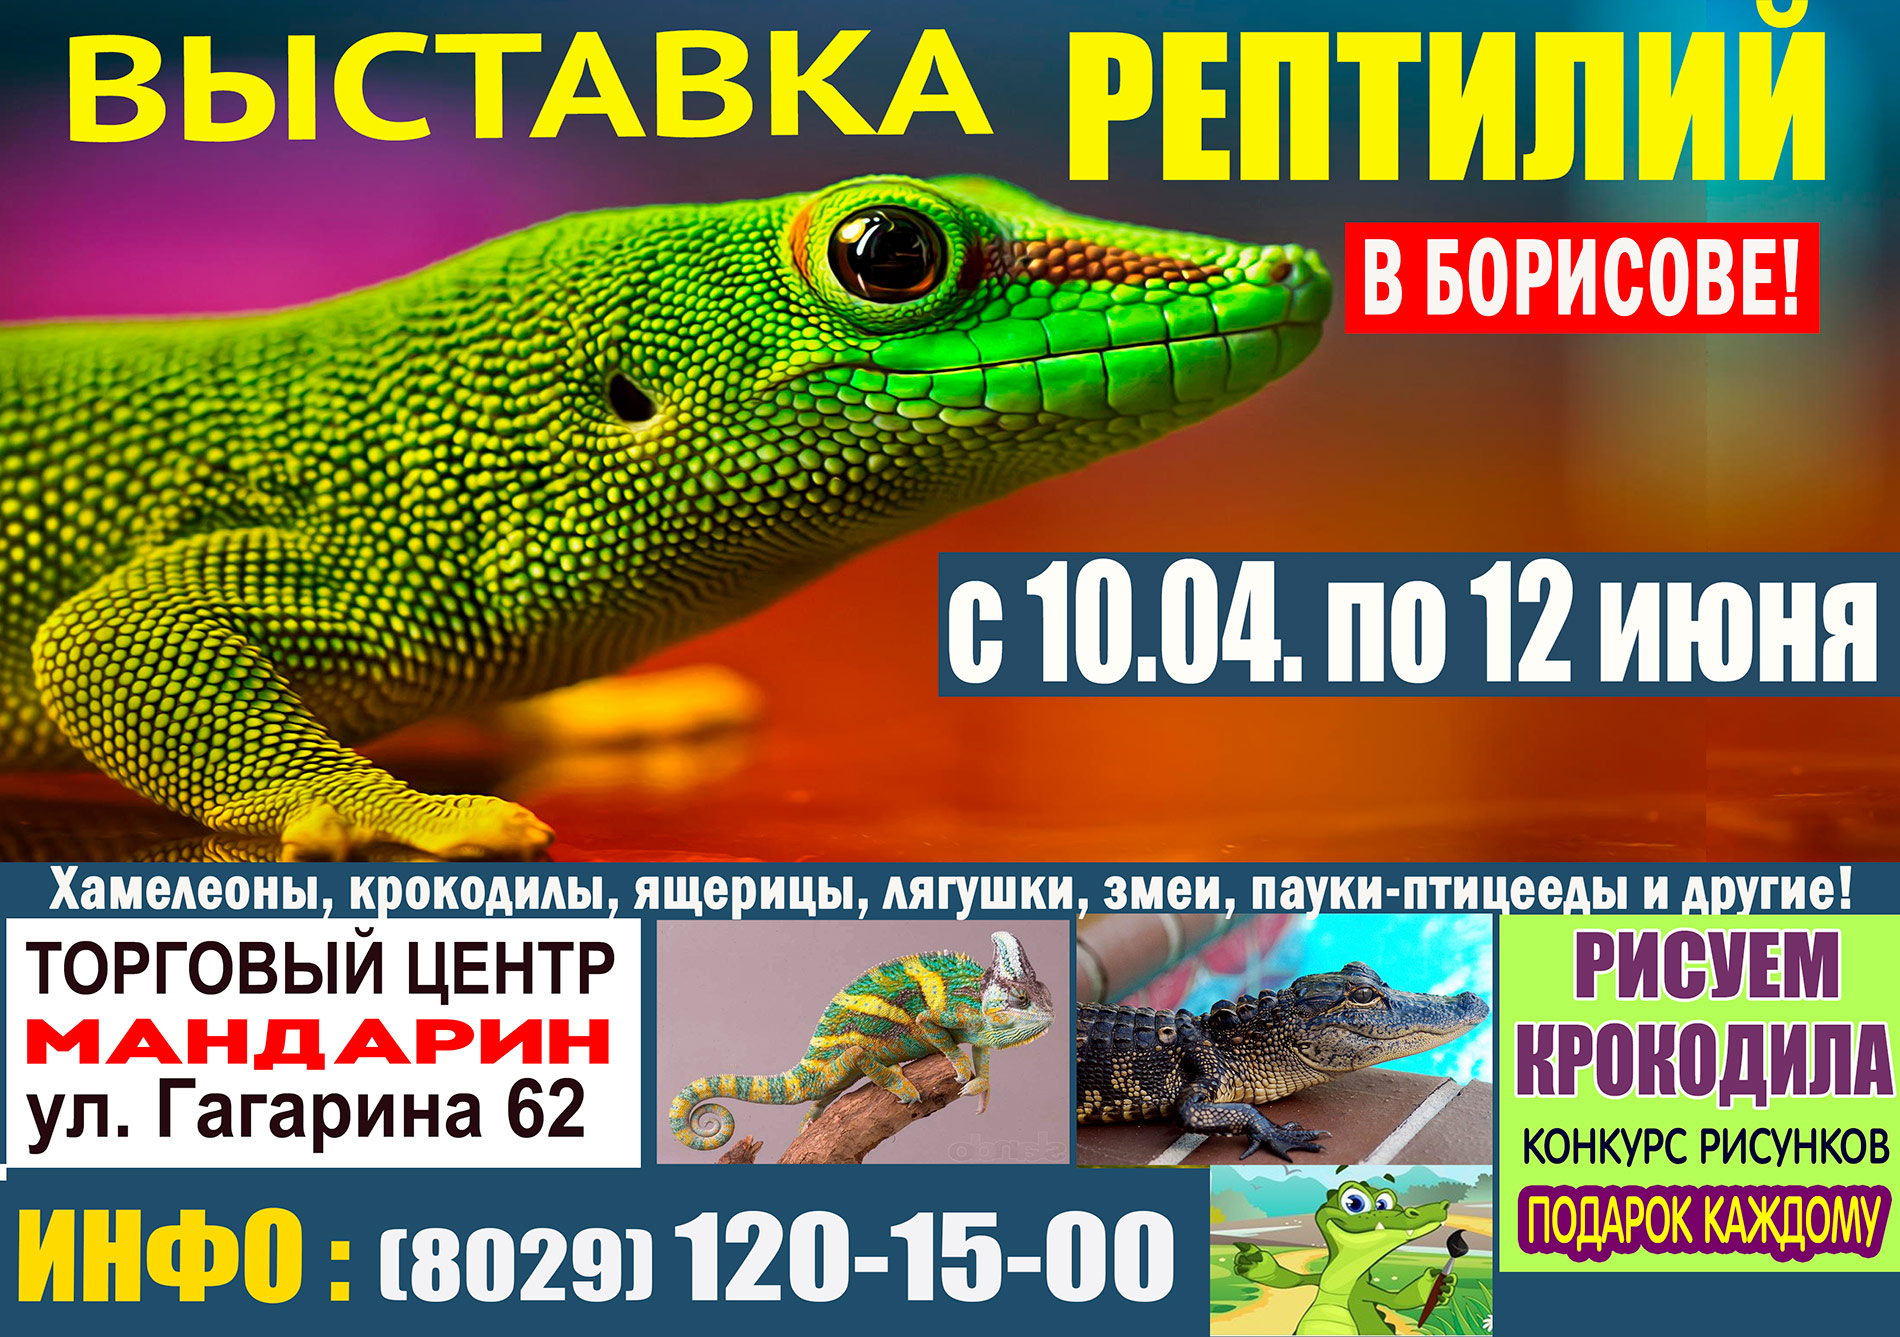 Покровский выставка рептилий. Крокодиловый хамелеон. Выставка рептилий Владивосток. Выставка ящериц. Выставка рептилий Абакан.